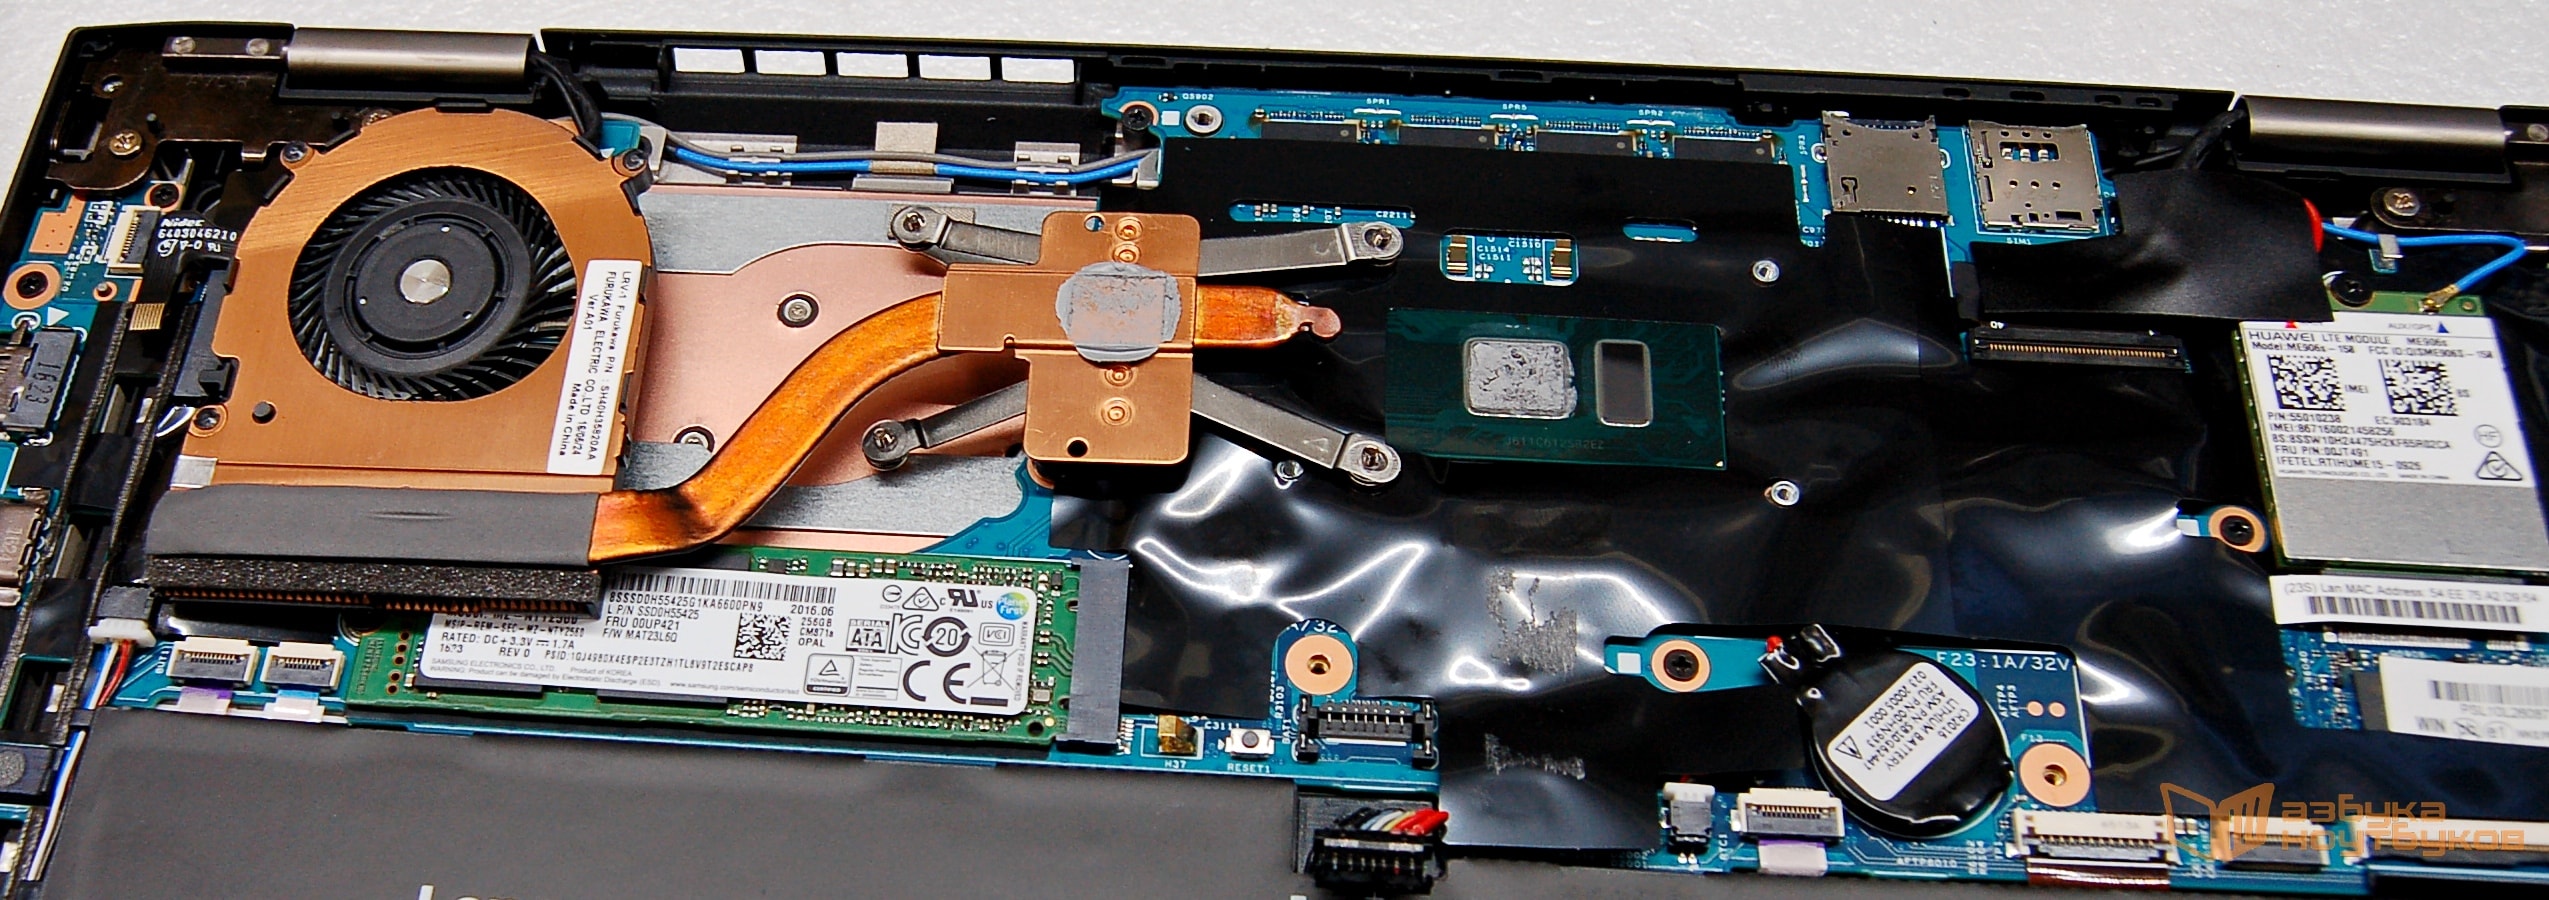 Материнская плата ноутбука Lenovo Carbon X1 Gen4 - процессор i7-6500 и система охлаждения NIDEC.